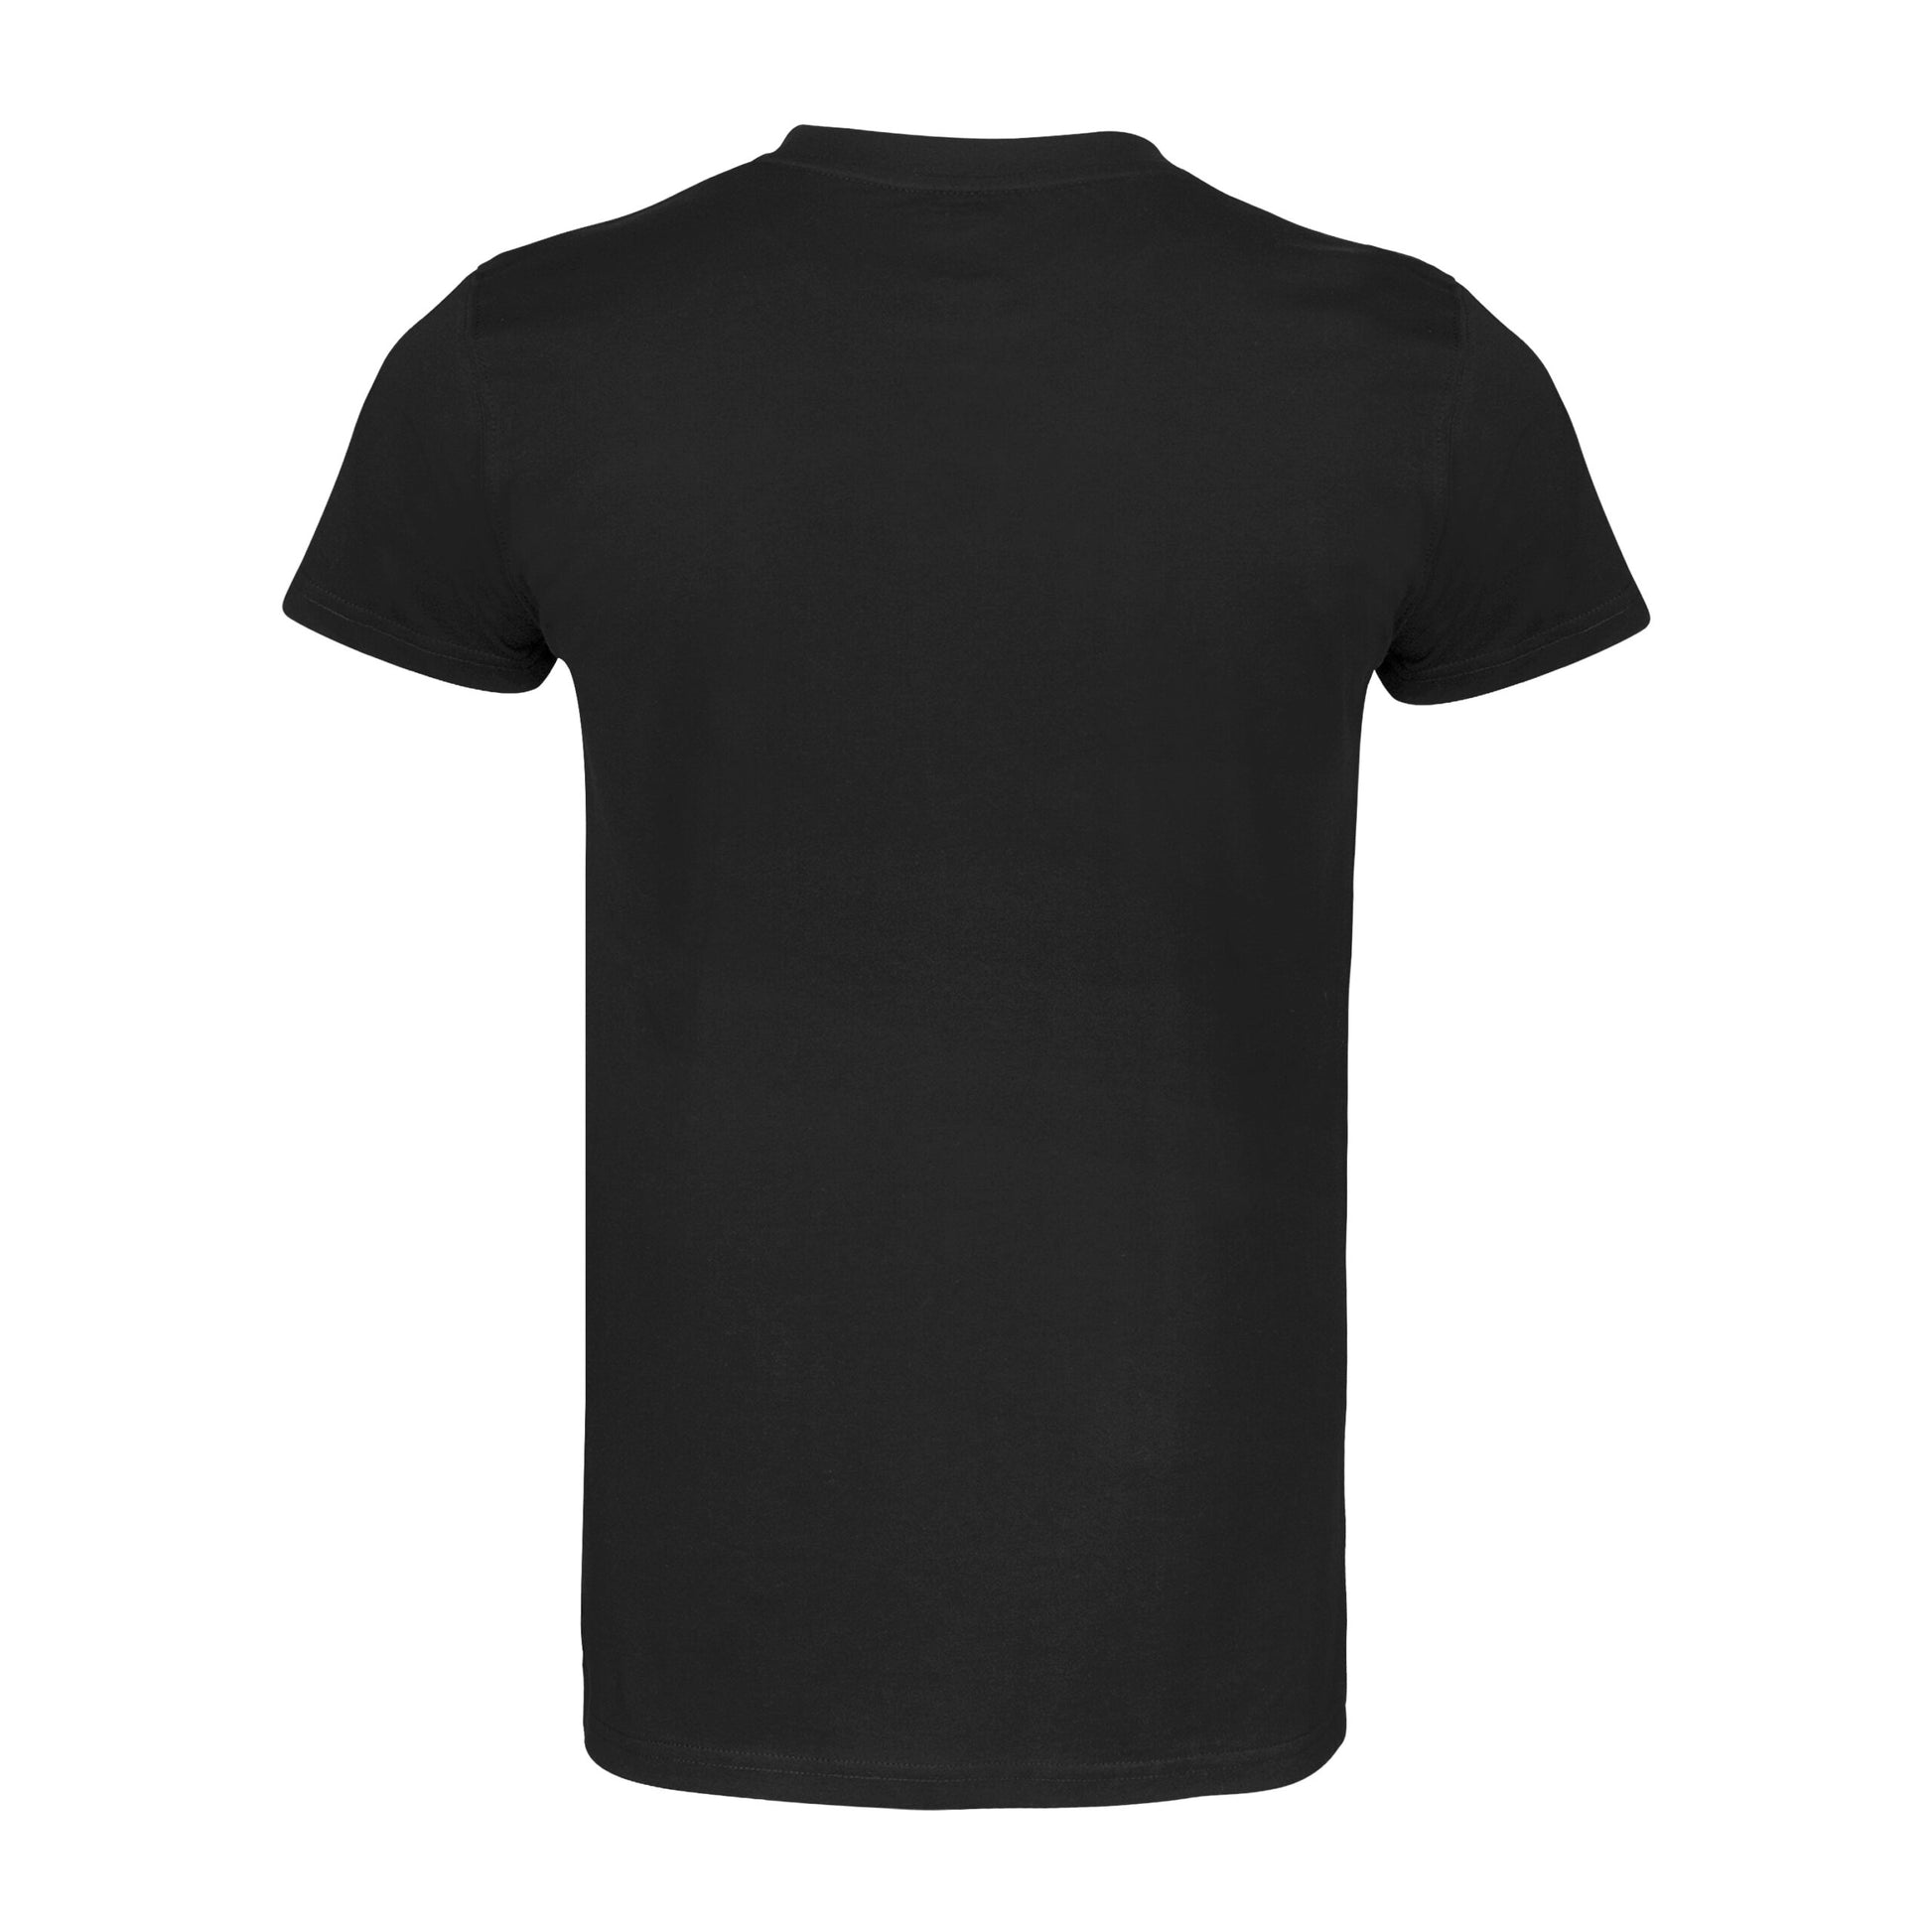 Clts21 B Adidas Boxing T Shirt Black 03